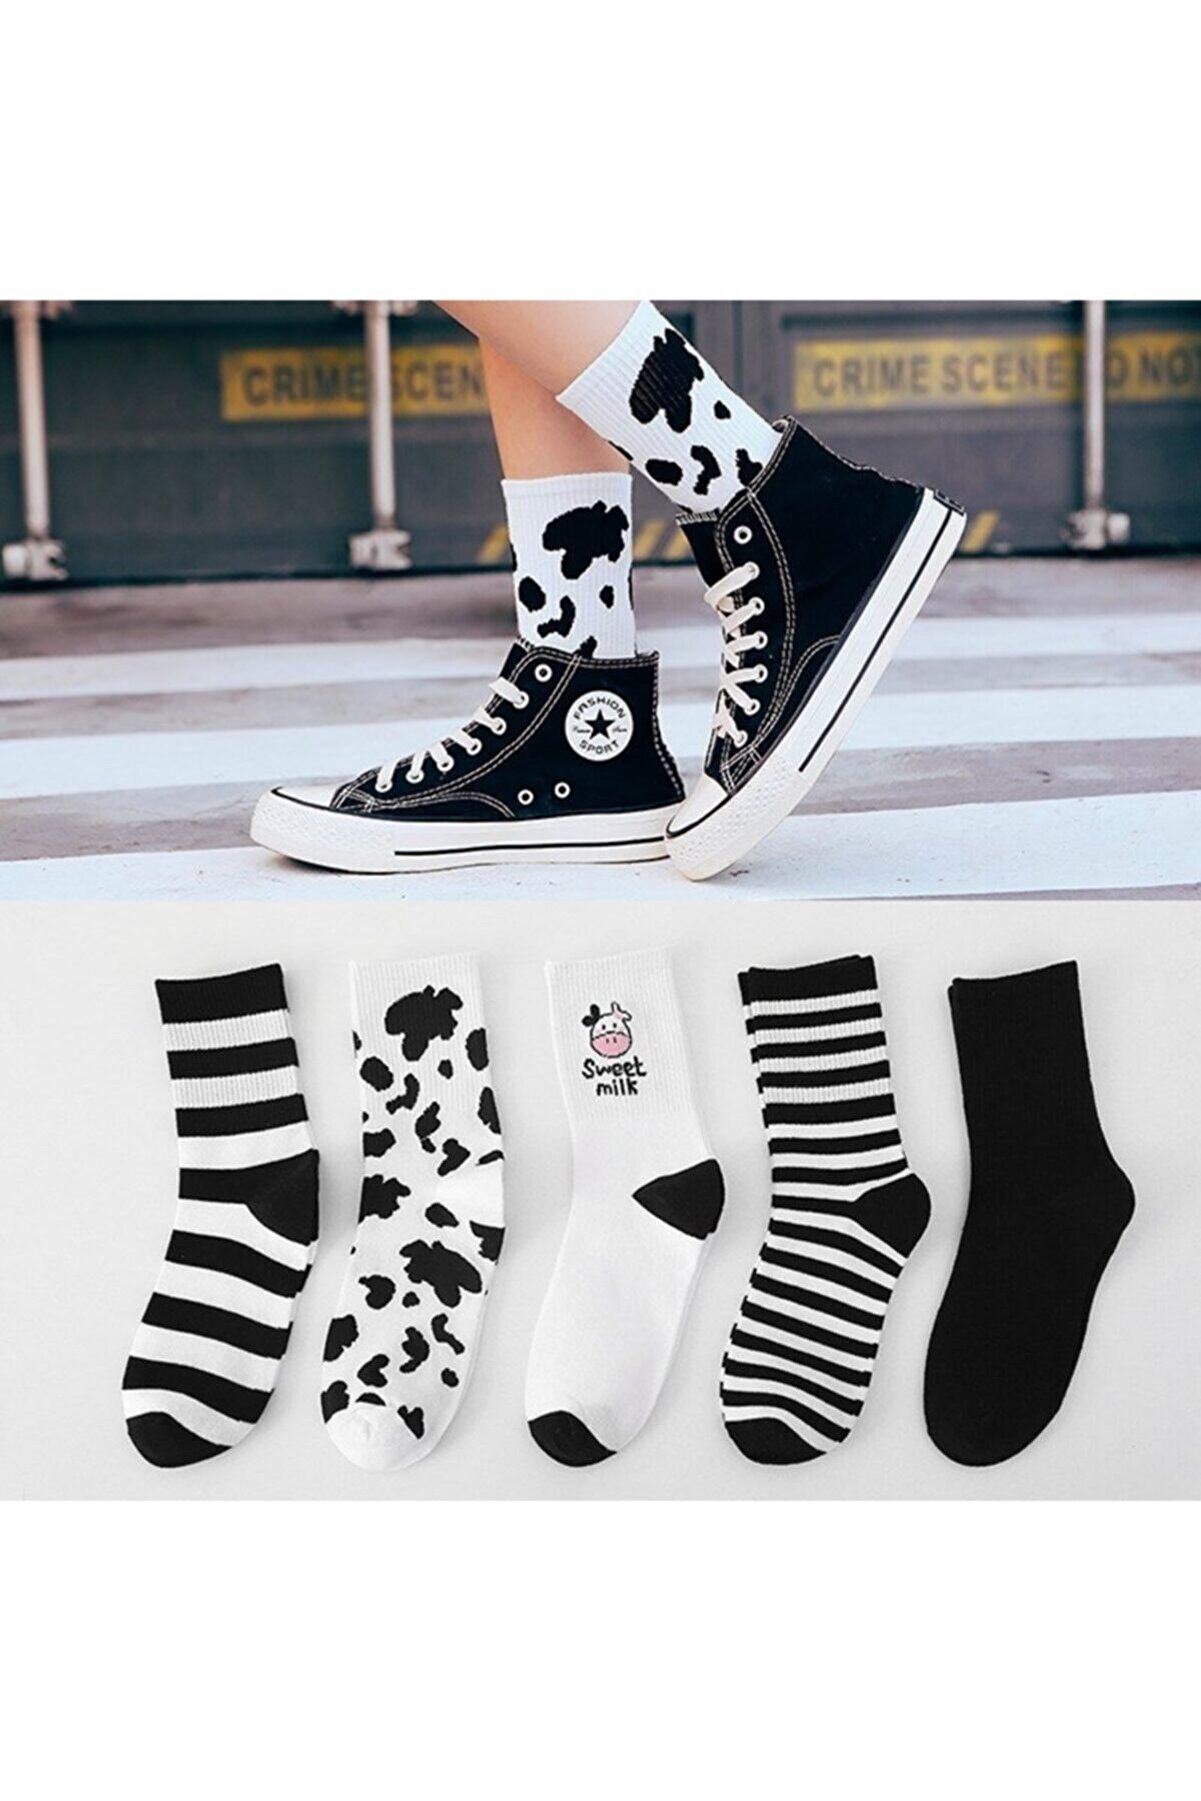 çorapmanya Kadın 5 Çift Siyah Beyaz Inek Desenli Çizgili Tenis Çorabı